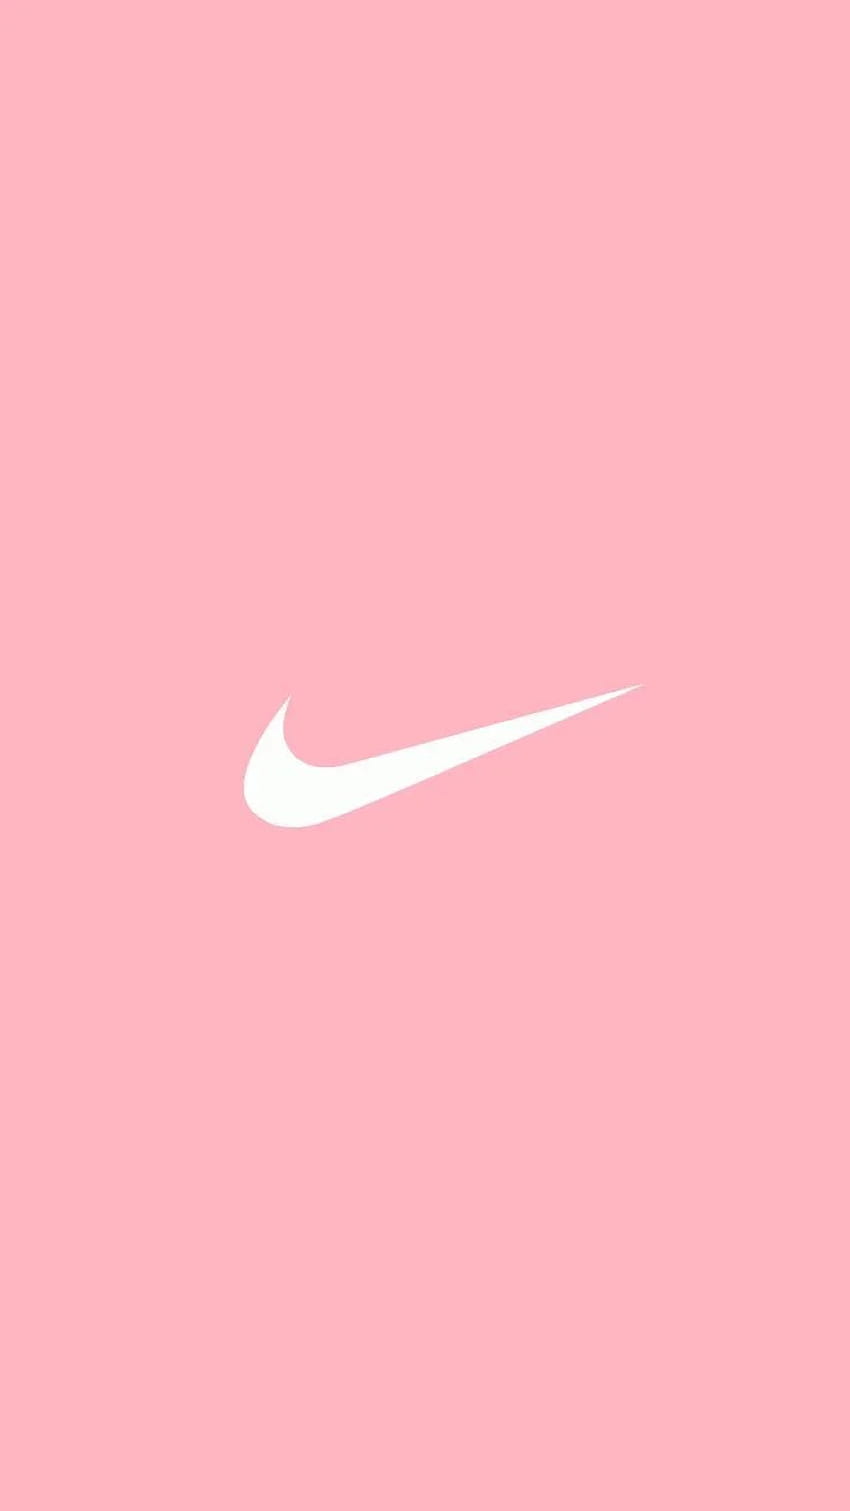 Hình nền Nike màu hồng mang đến sự nữ tính và phong cách cho người sử dụng. Thiết kế cực kỳ dễ thương và tinh tế giúp cho điện thoại hoặc máy tính của bạn trở nên xinh đẹp hơn. Hãy xem hình nền liên quan để đắm chìm trong thế giới đầy sự quyến rũ và tươi mới của Nike màu hồng.